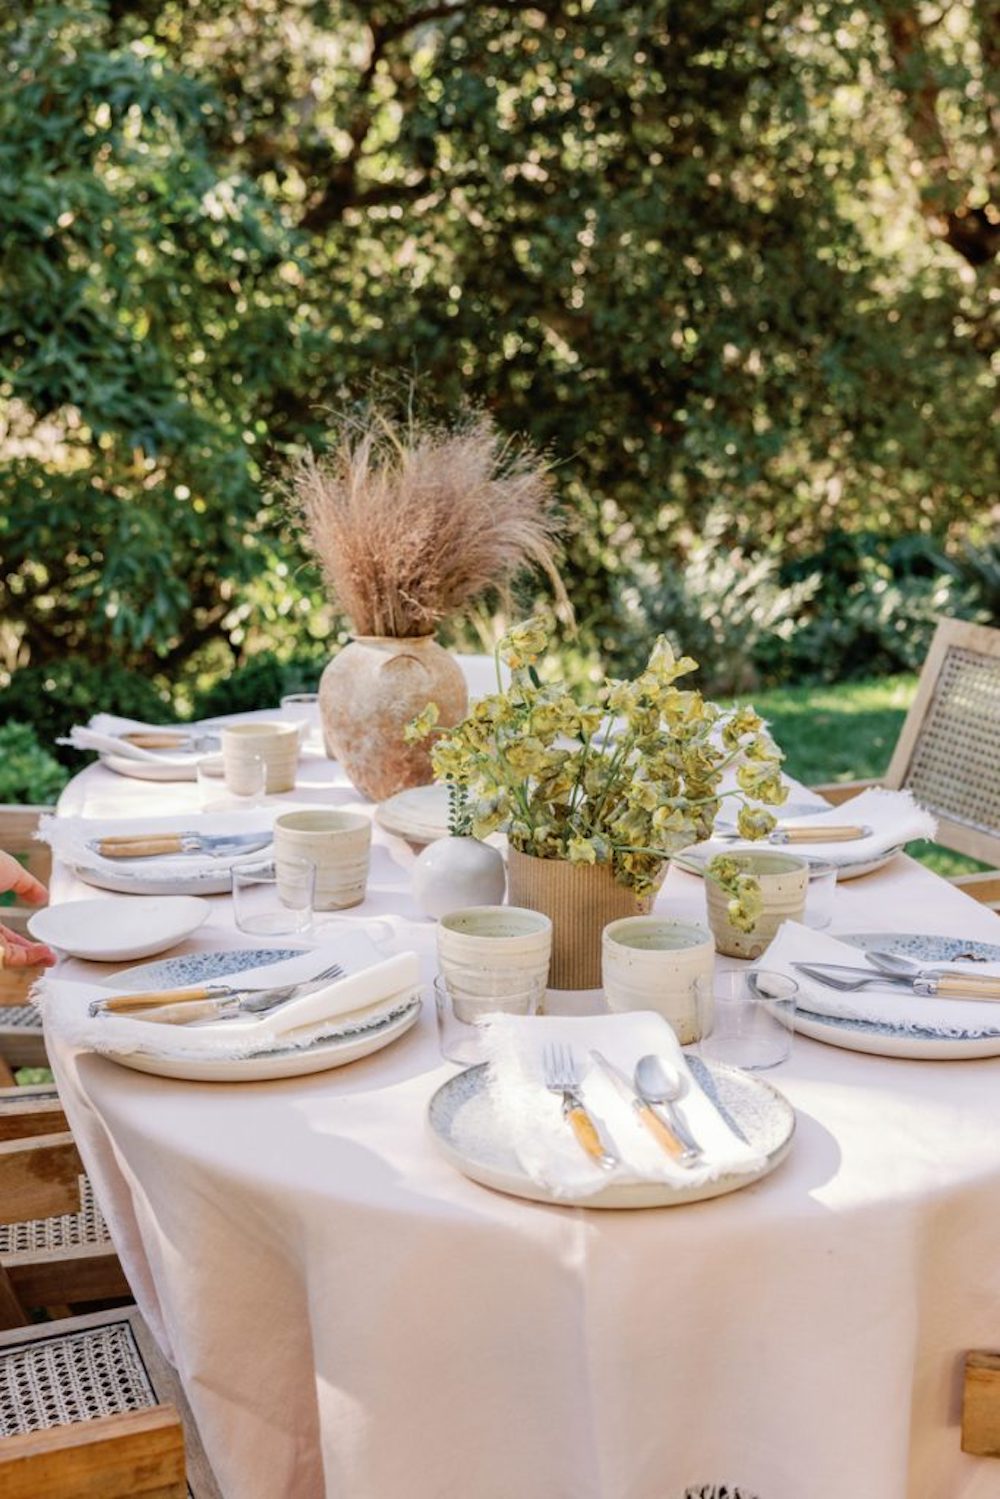 میز طبیعی در فضای باز با رومیزی کتان صورتی روشن، ظروف غذاخوری خنثی و ظروف تخت و گل های طبیعی.